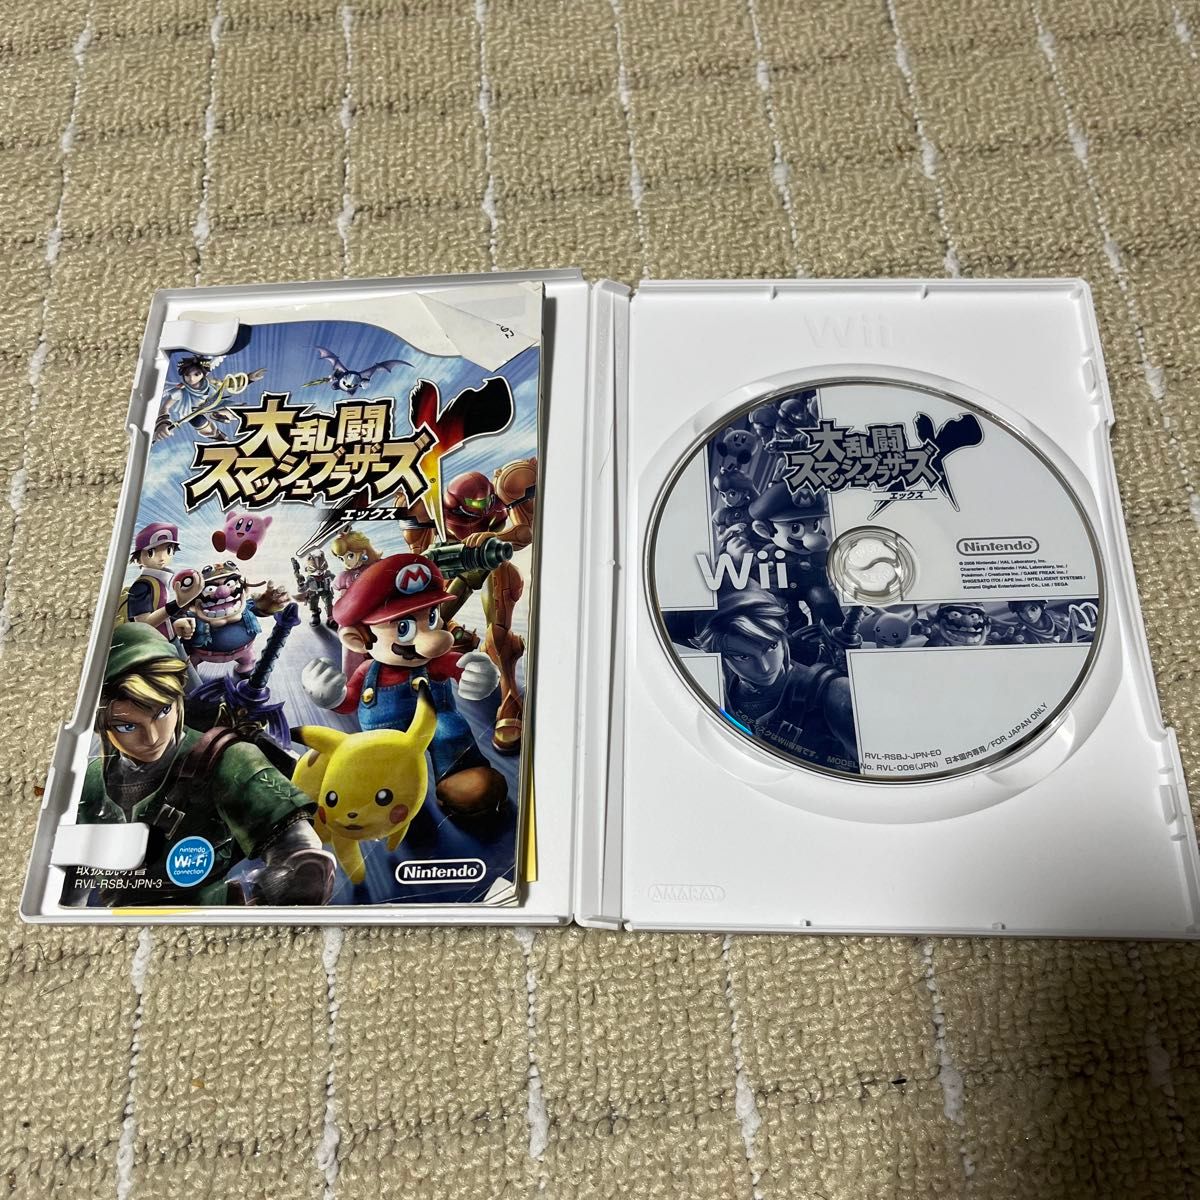 Wii ソフト 大乱闘スマッシュブラザーズX ドンキーコングリターンズ マリオパーティ8 スーパーペーパーマリオ 4本セット